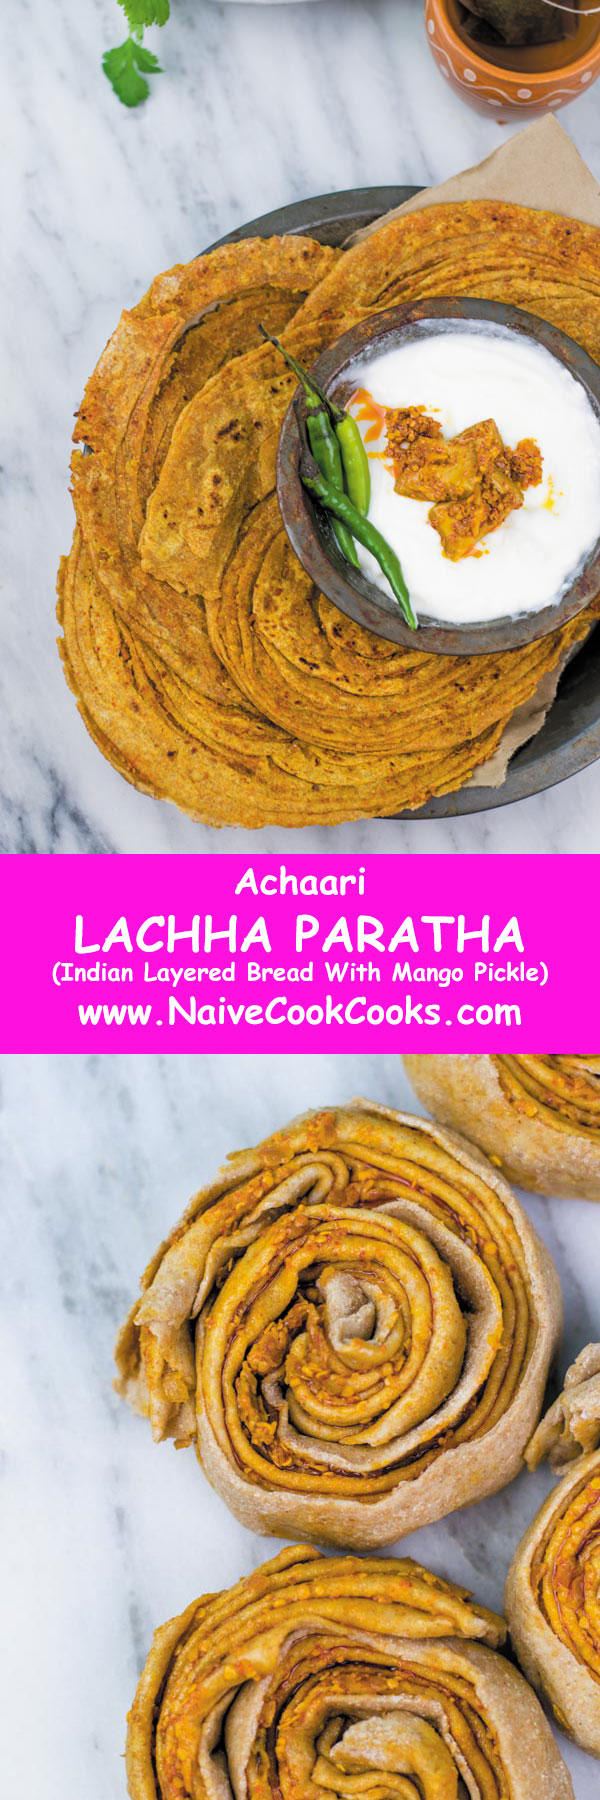 achaari lachha paratha for pinterest